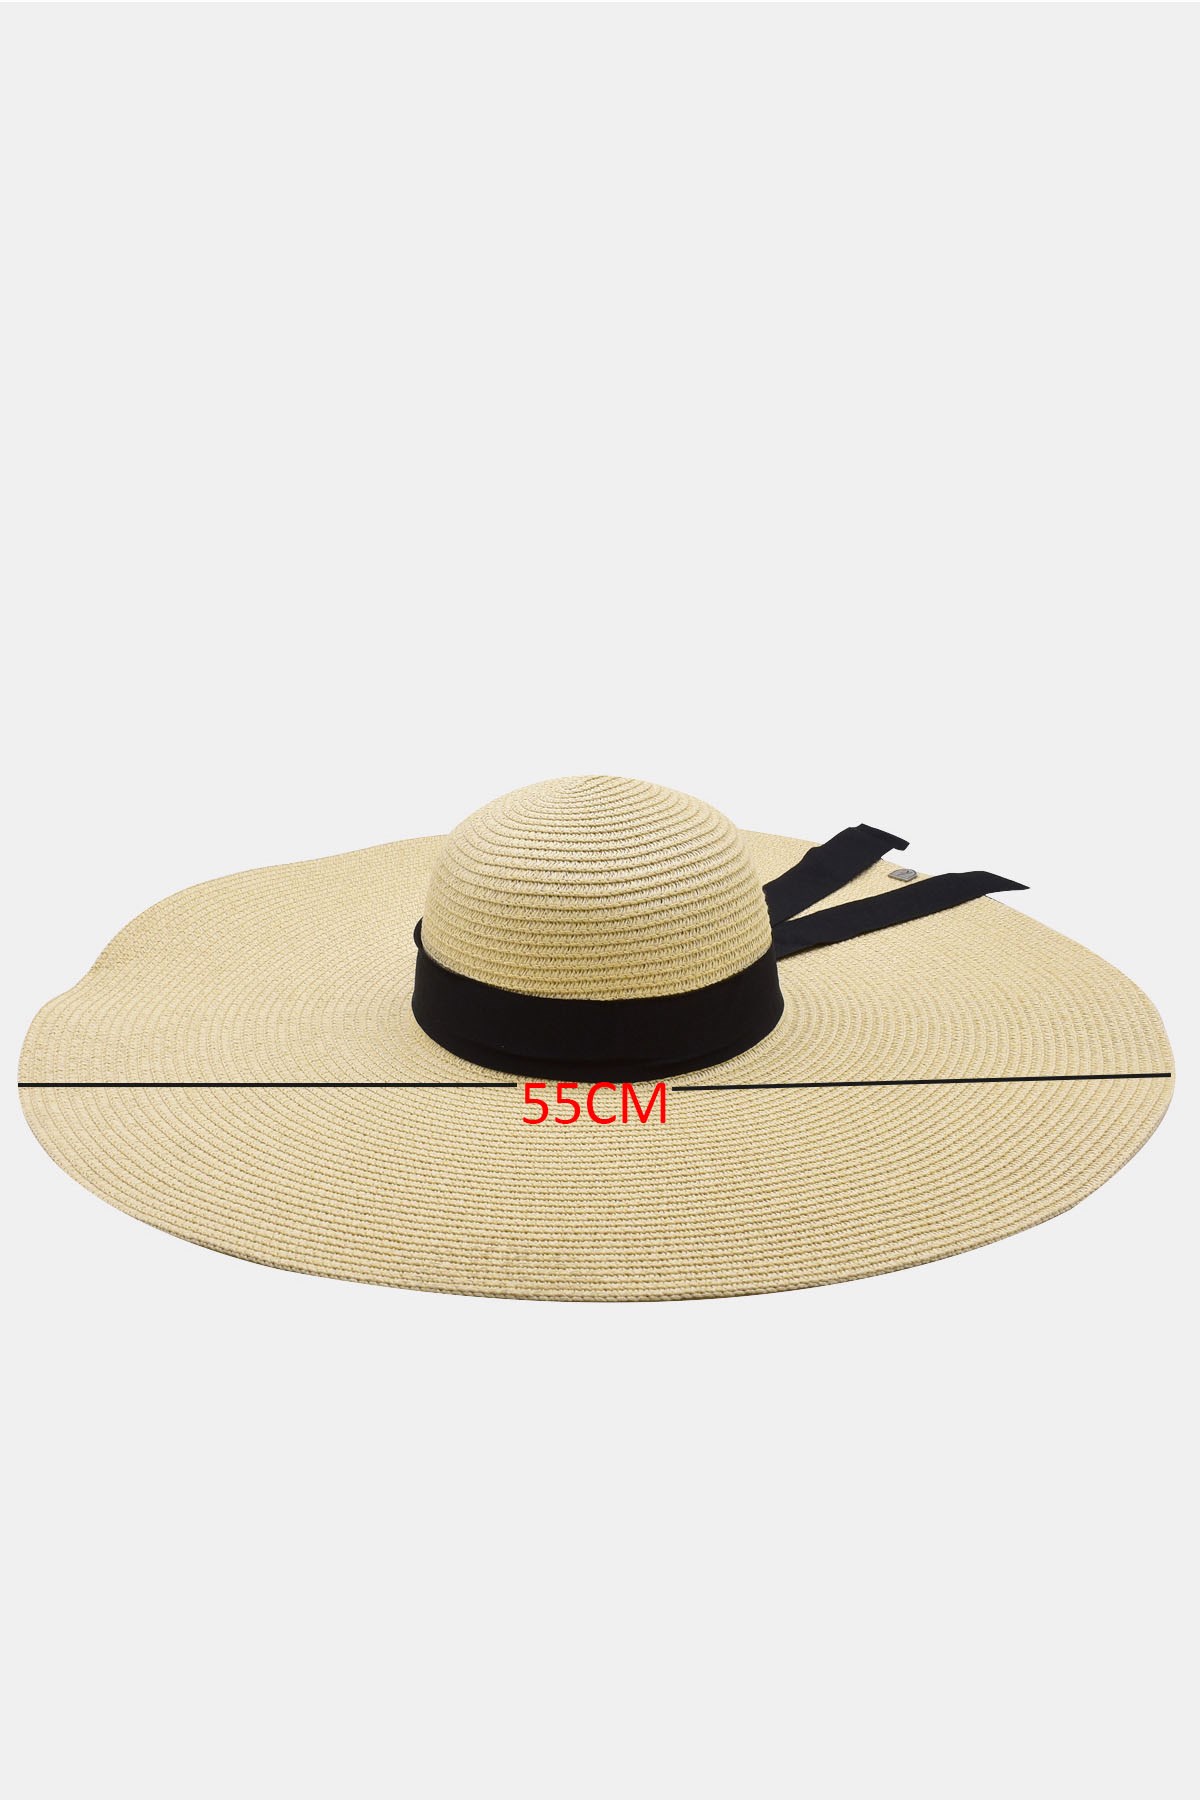 Külah Kadın Oversize Büyük Hasır Şapka Naturel Plaj Şapkası KLH7194